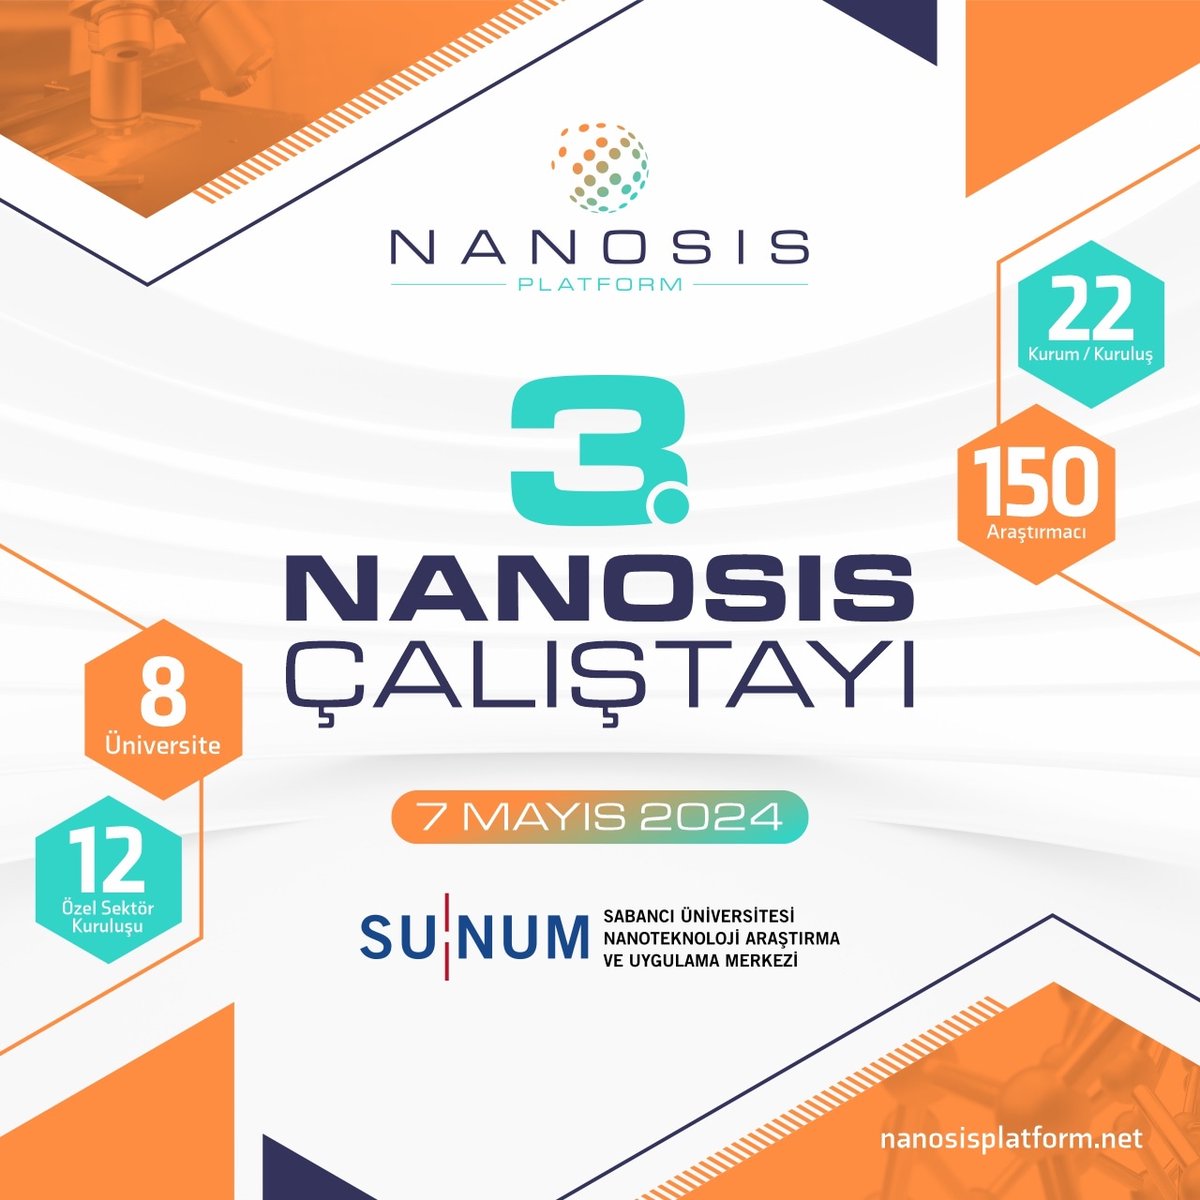 3. NANOSİS Çalıştayı, 7 Mayıs'ta yönetici kurum SUNUM'un ev sahipliğinde gerçekleşecek. Çalıştaya katılacak araştırmacılar, bugüne kadar gerçekleştirdikleri çalışmaları ve bu süreçte elde ettikleri prototipleri paylaşarak gelecekteki prototip geliştirme konularını inceleyecekler